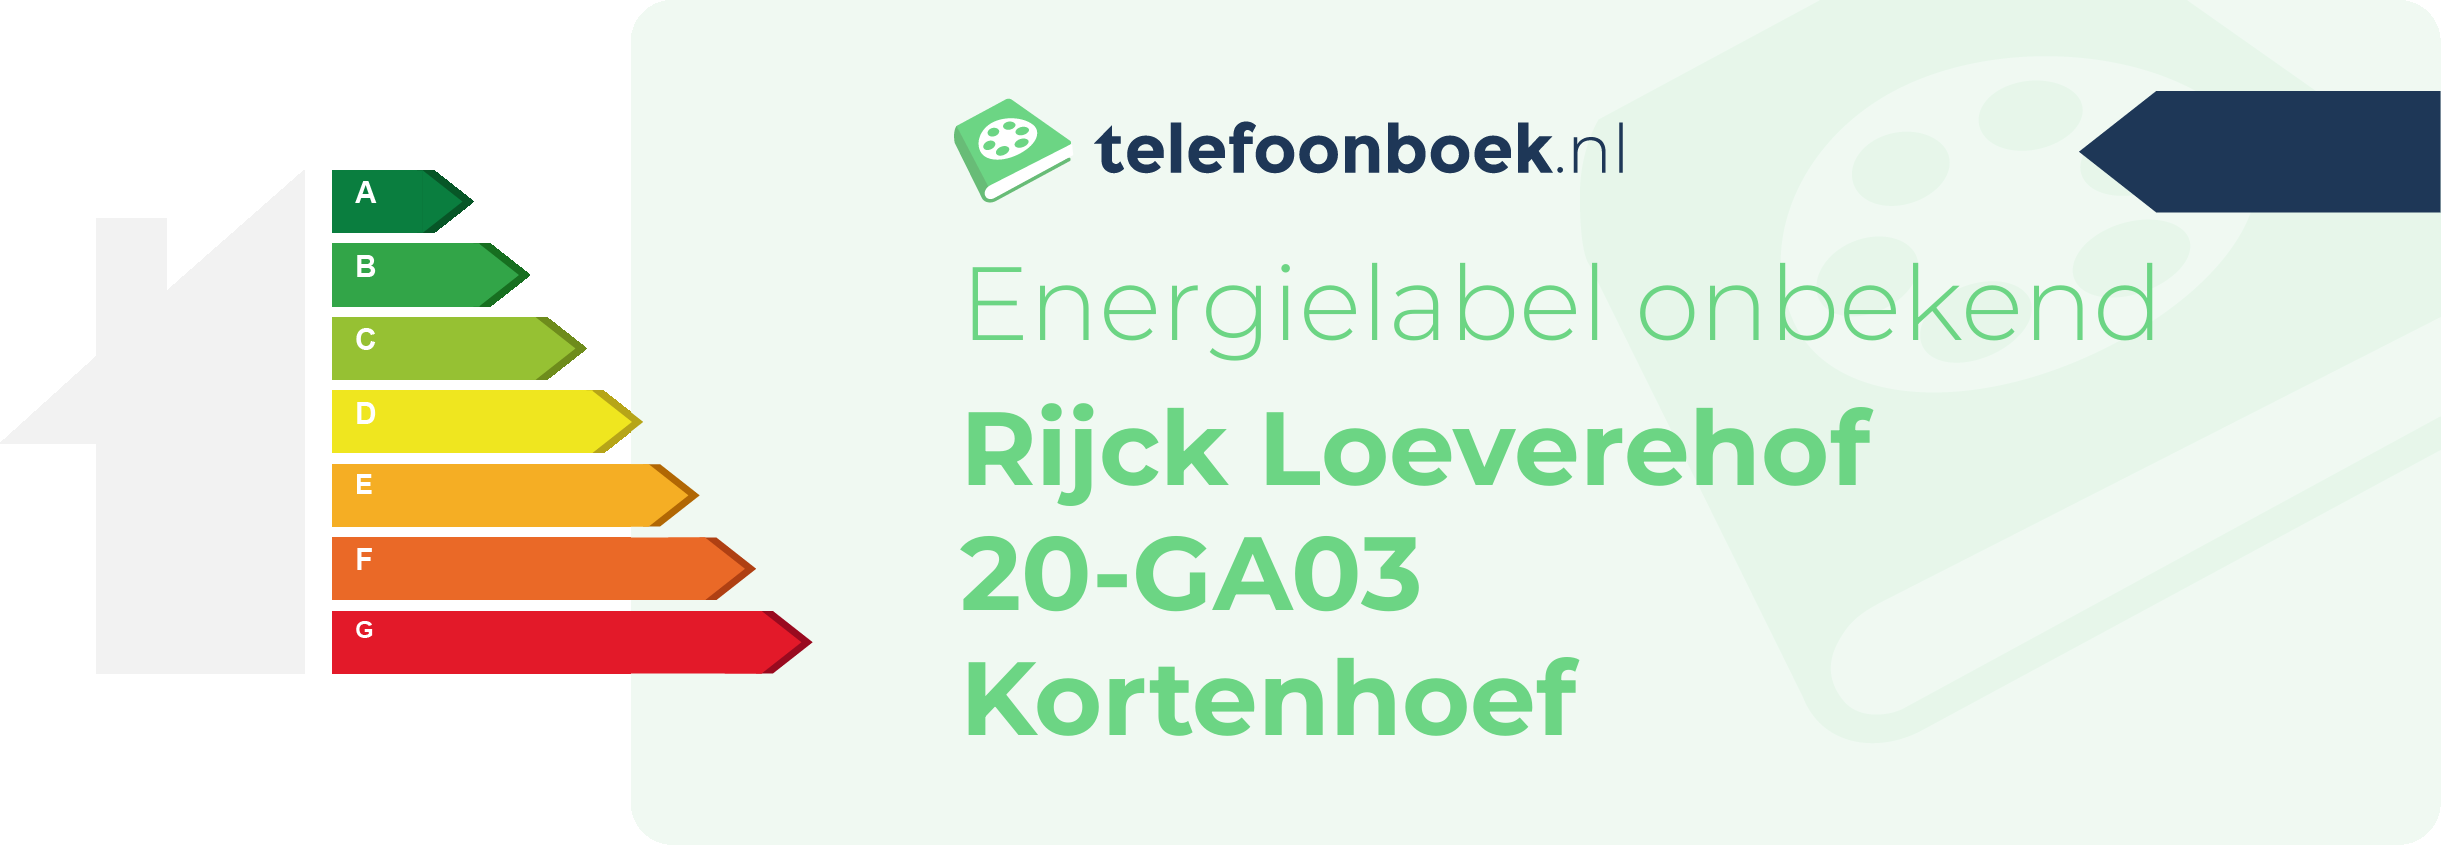 Energielabel Rijck Loeverehof 20-GA03 Kortenhoef